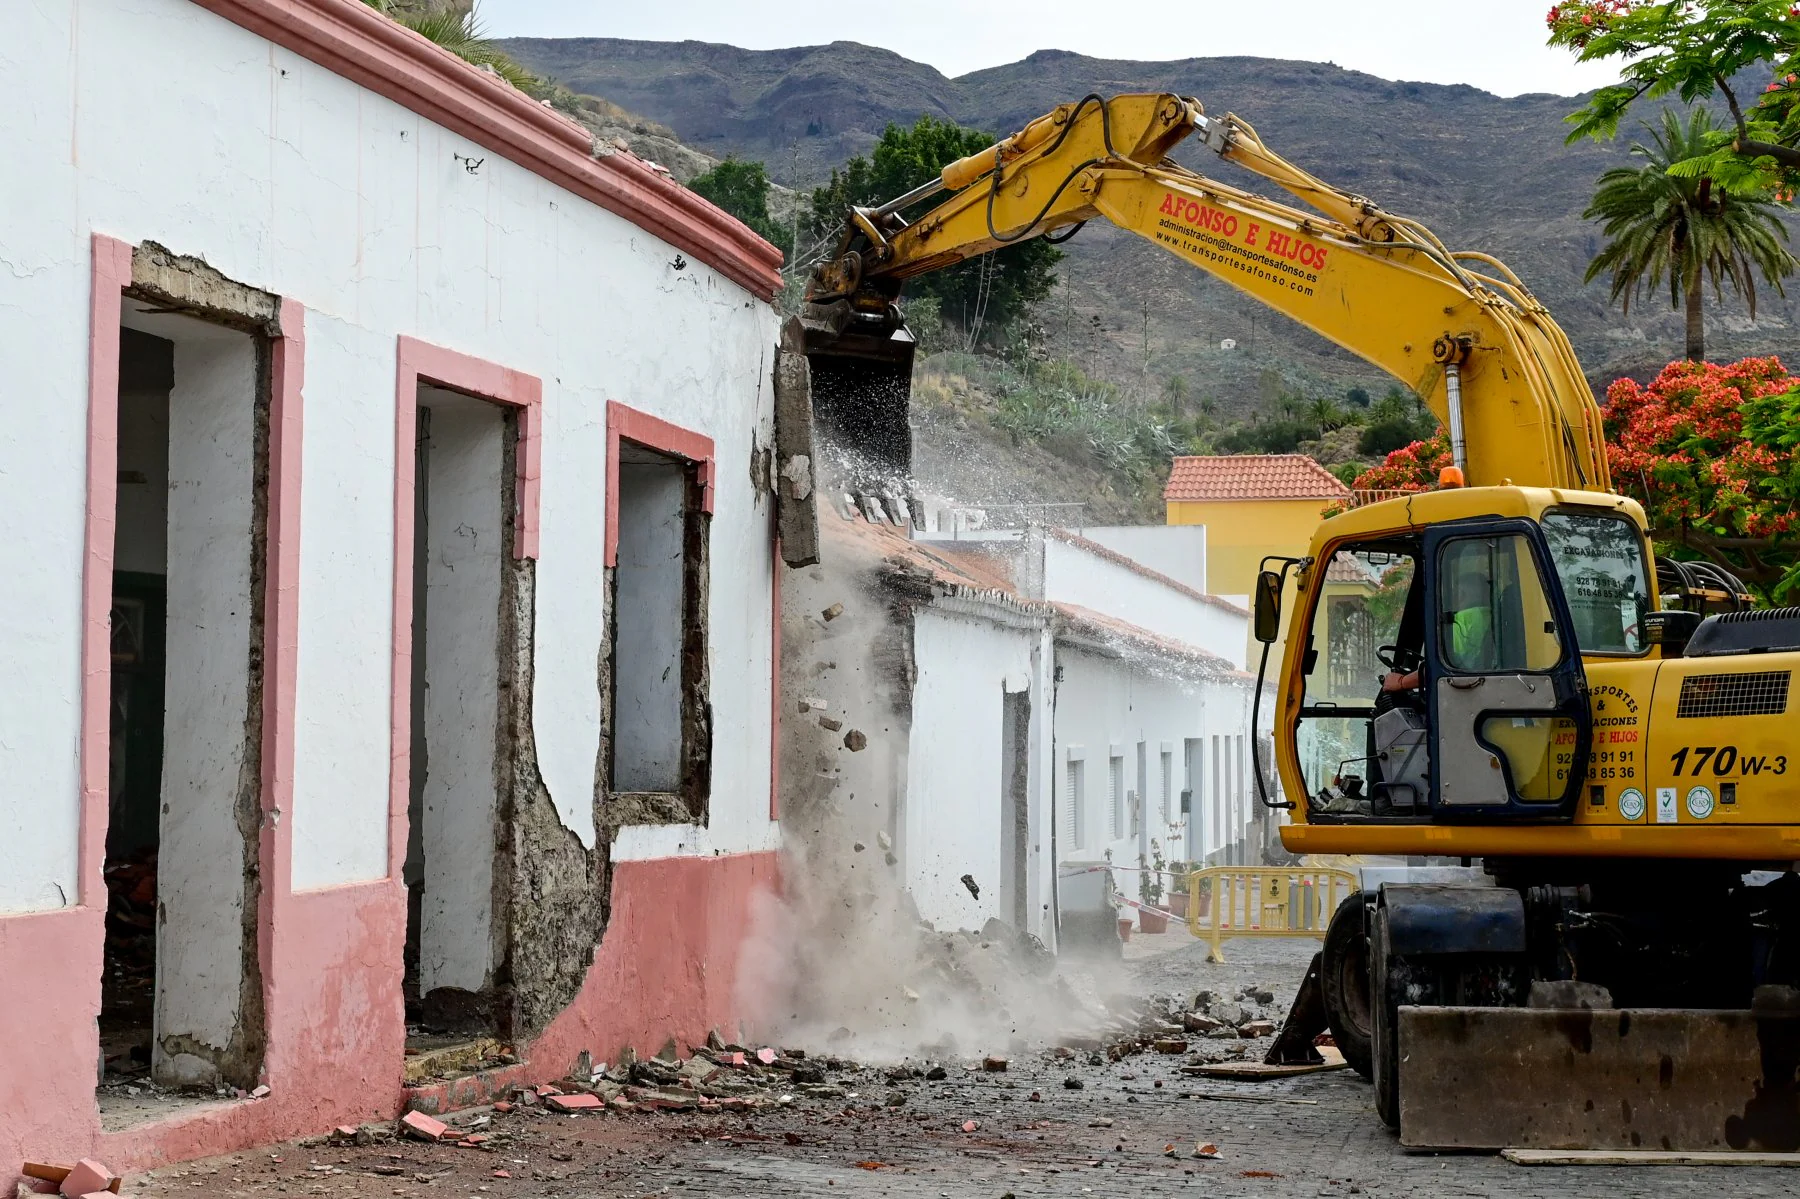 Momento en que el tractor empieza a demoler la fachada del antiguo colegio de Santa Lucía.